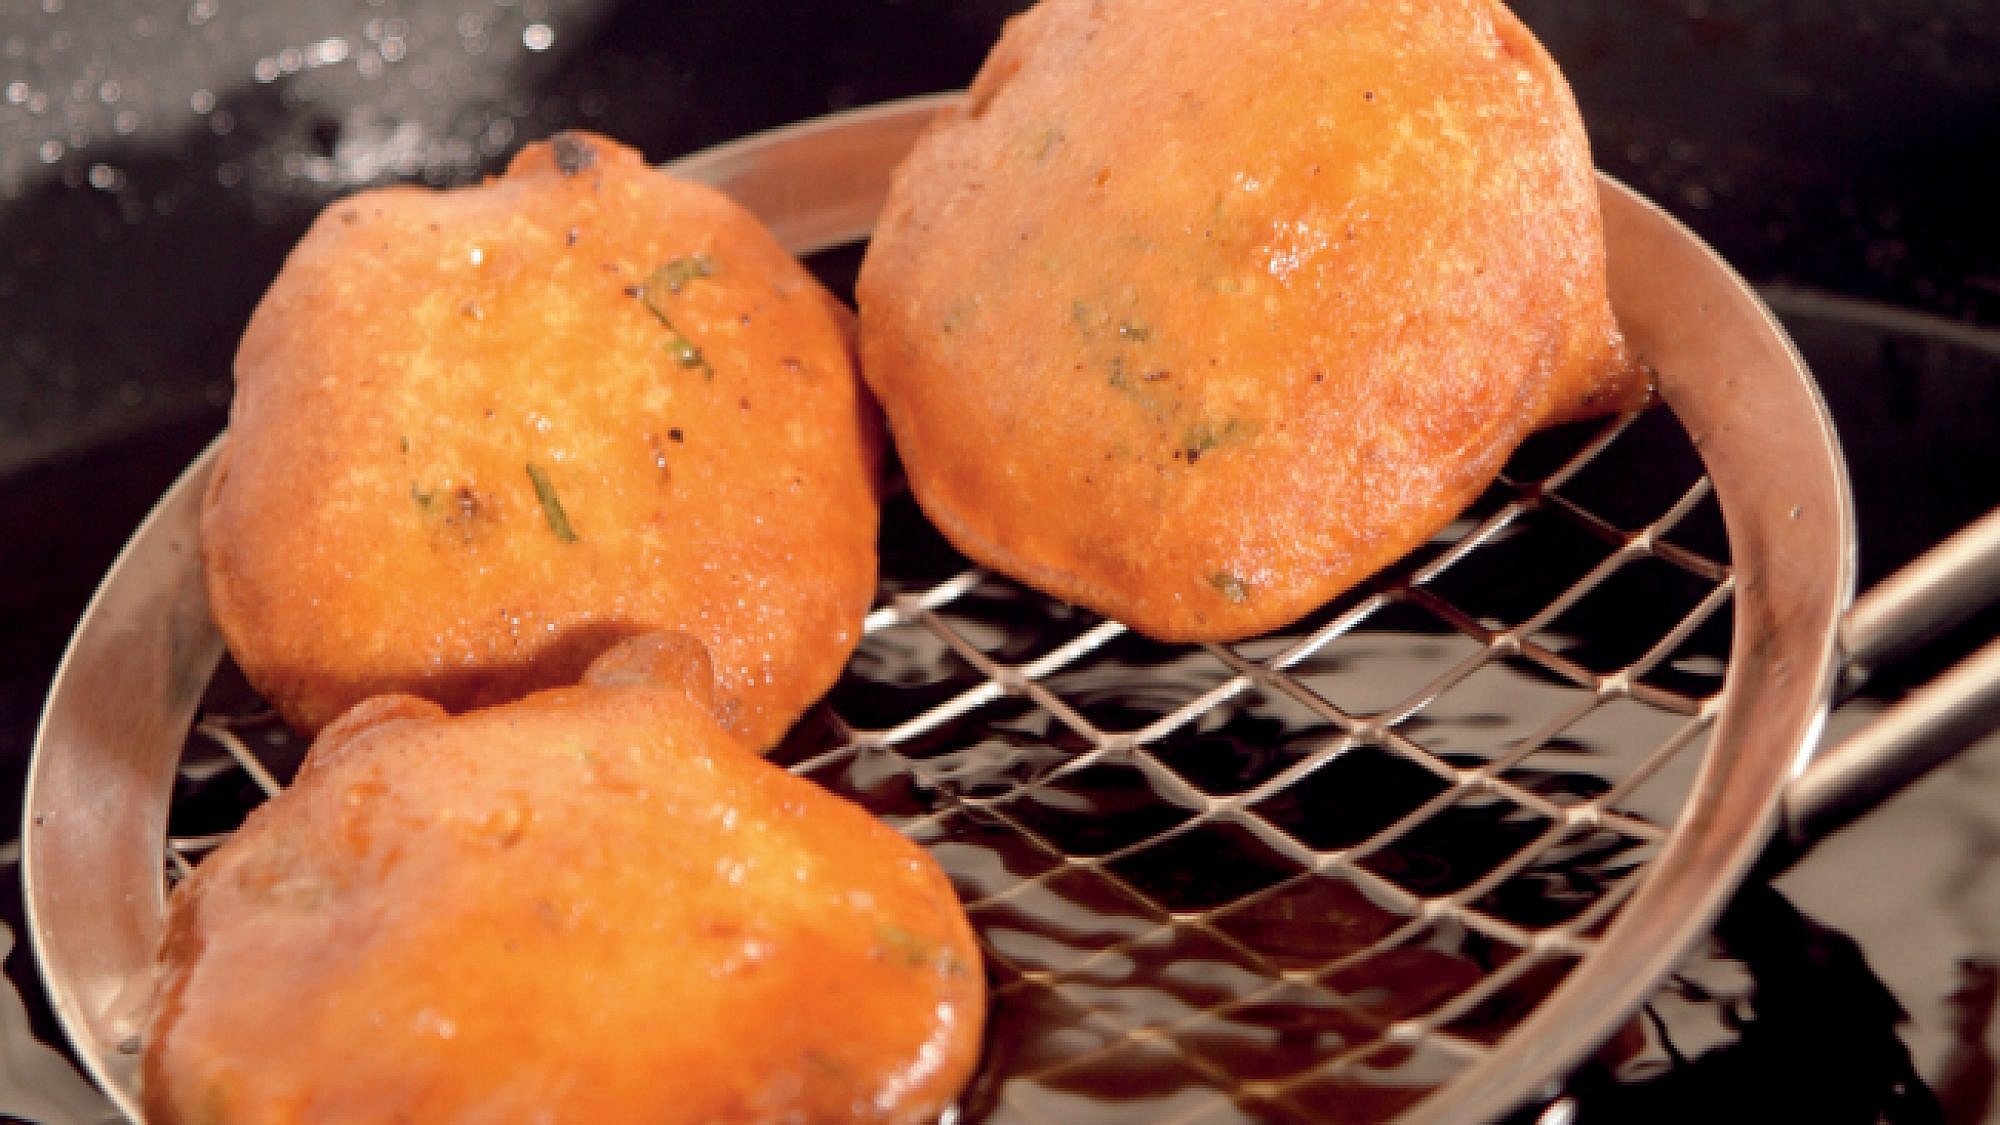 פאקורה - טיגוניות ירק מהמטבח ההודי. צילום: דניאל לילה | סגנון: דלית רוסו